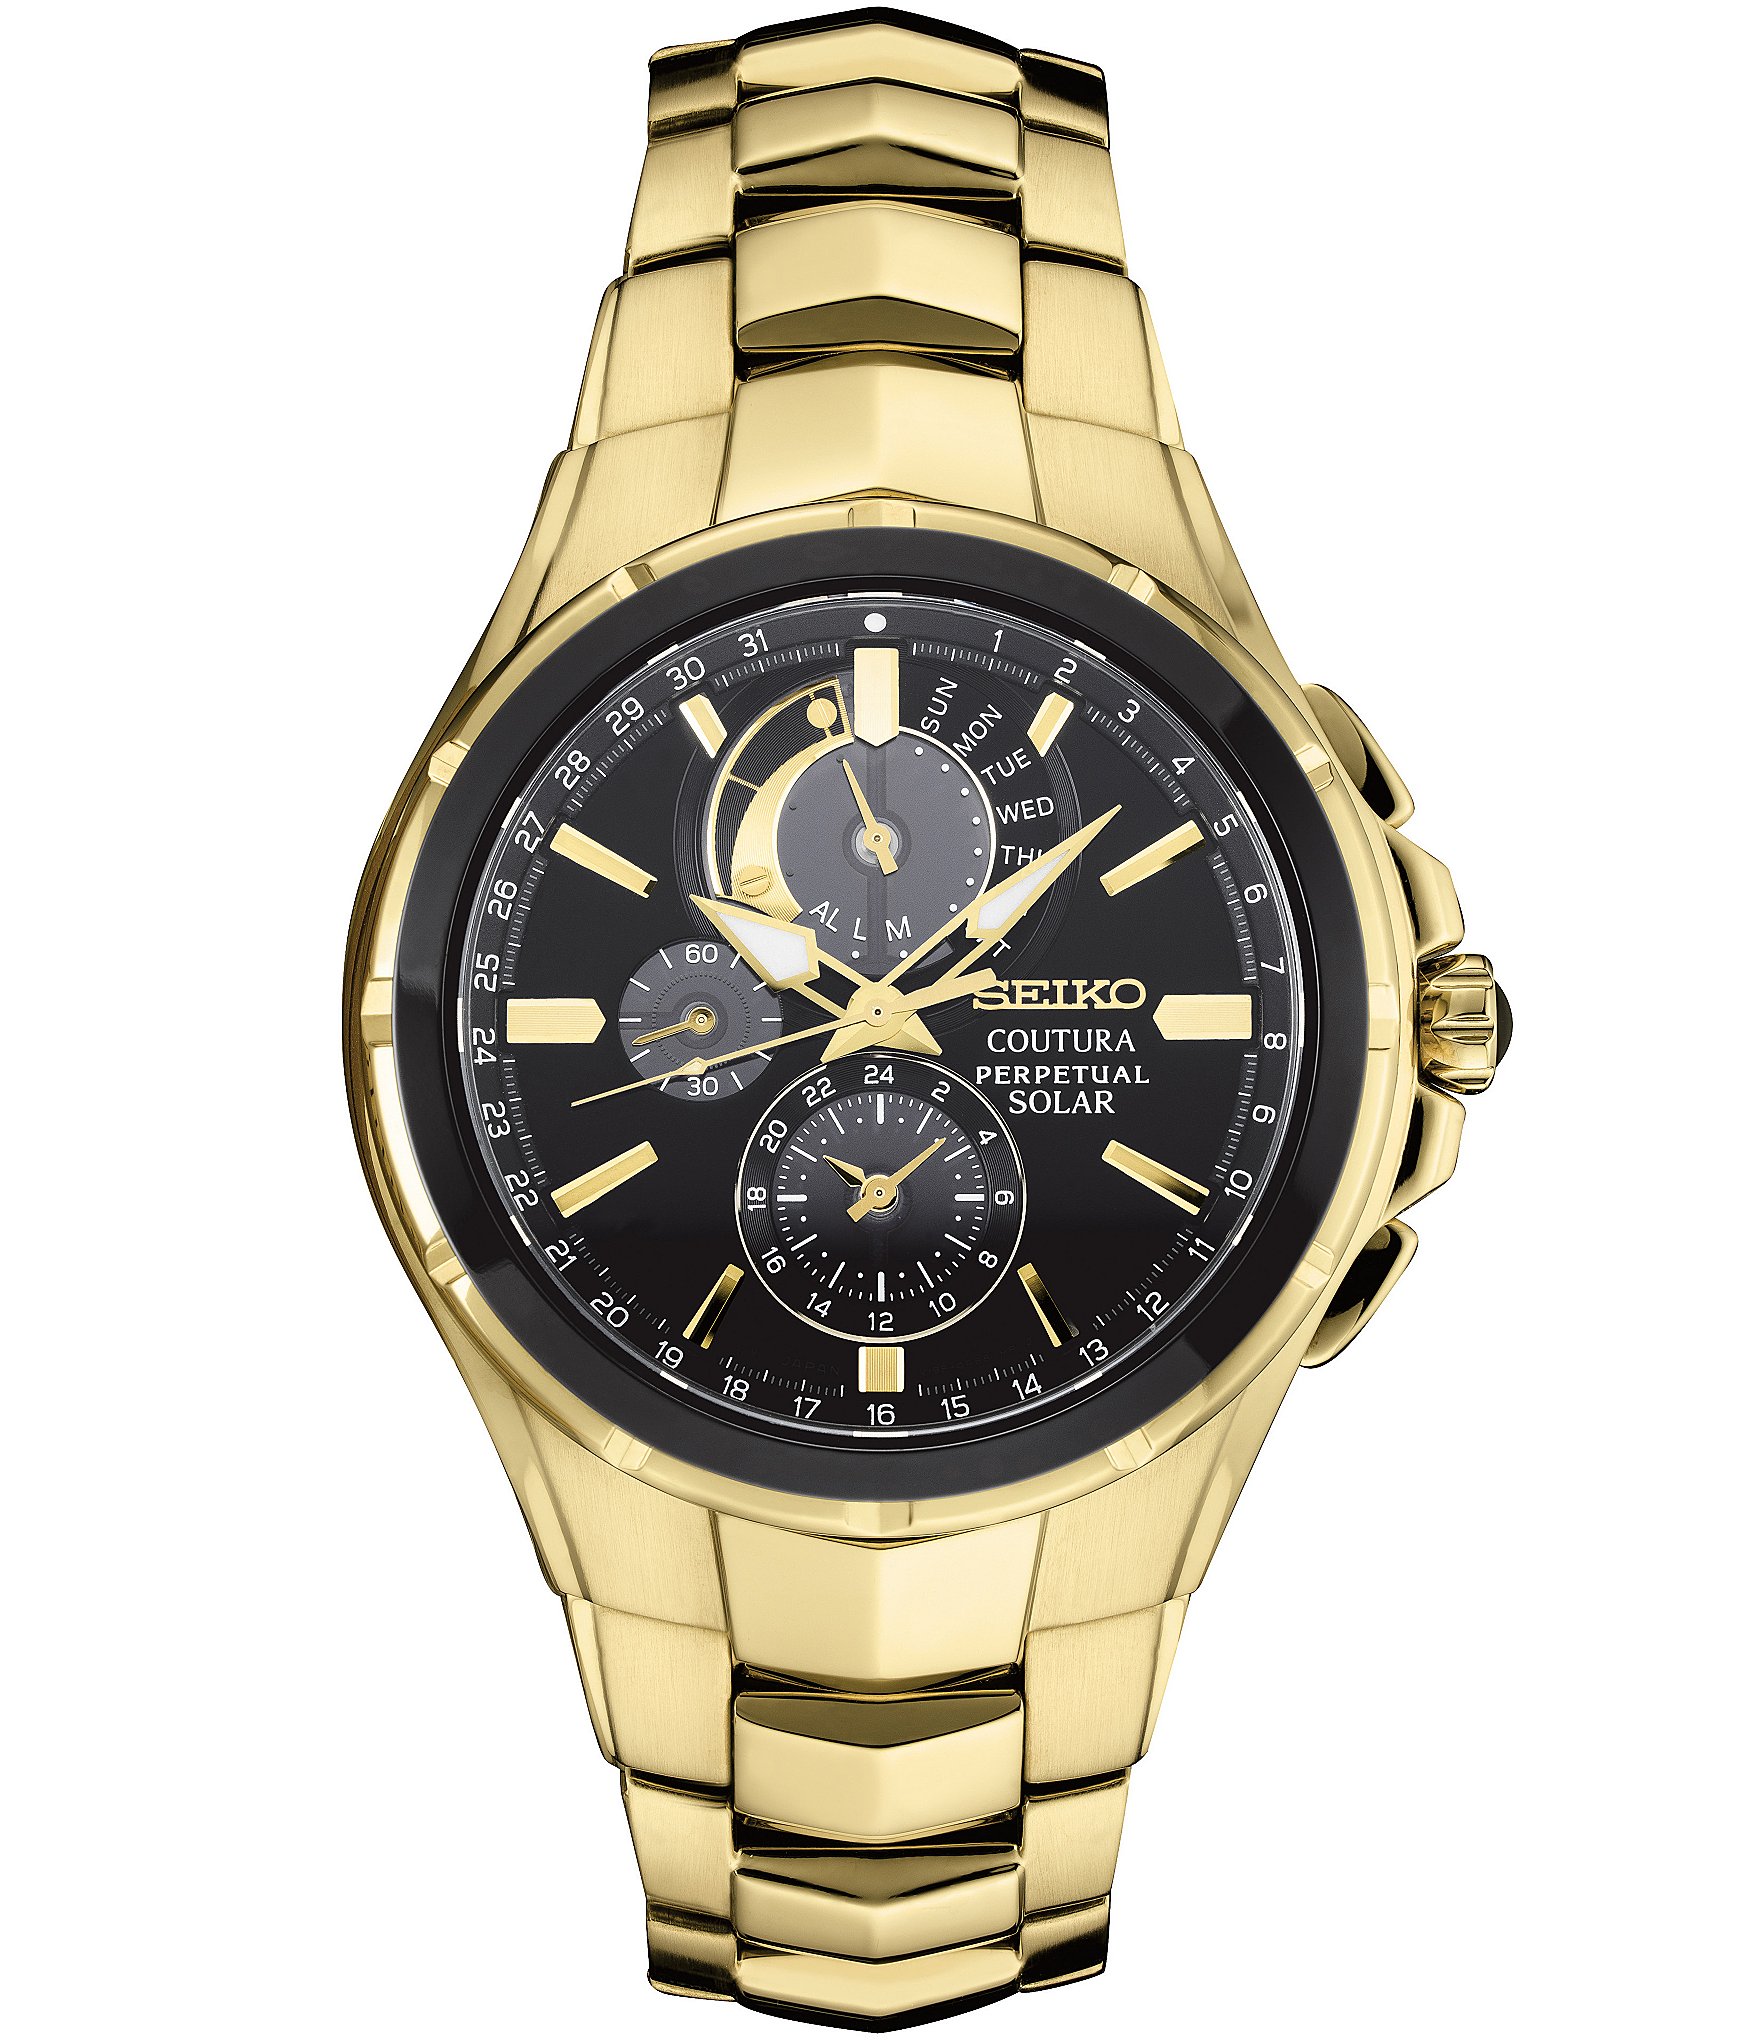 Seiko Men's Coutura Perpetual Alarm Chronograph Gold Bracelet | Dillard's